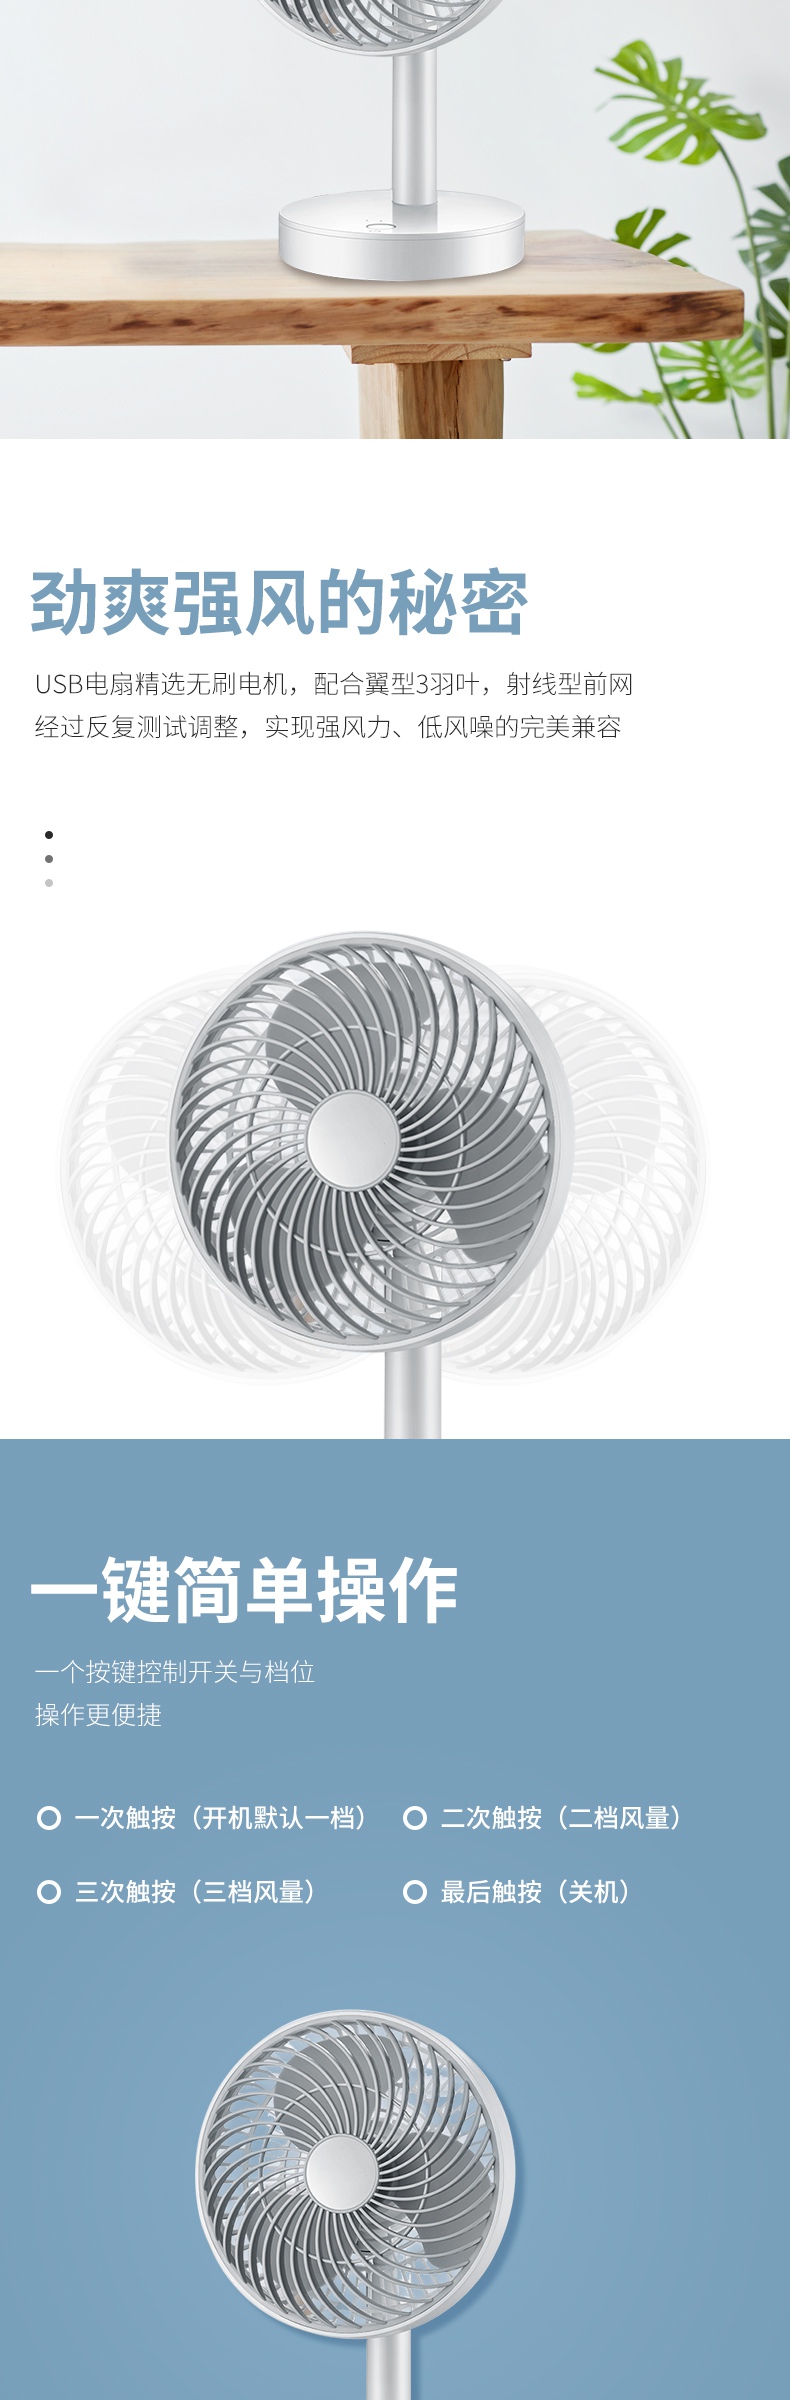 C4D简约时尚家居台式风扇电商详情页设计